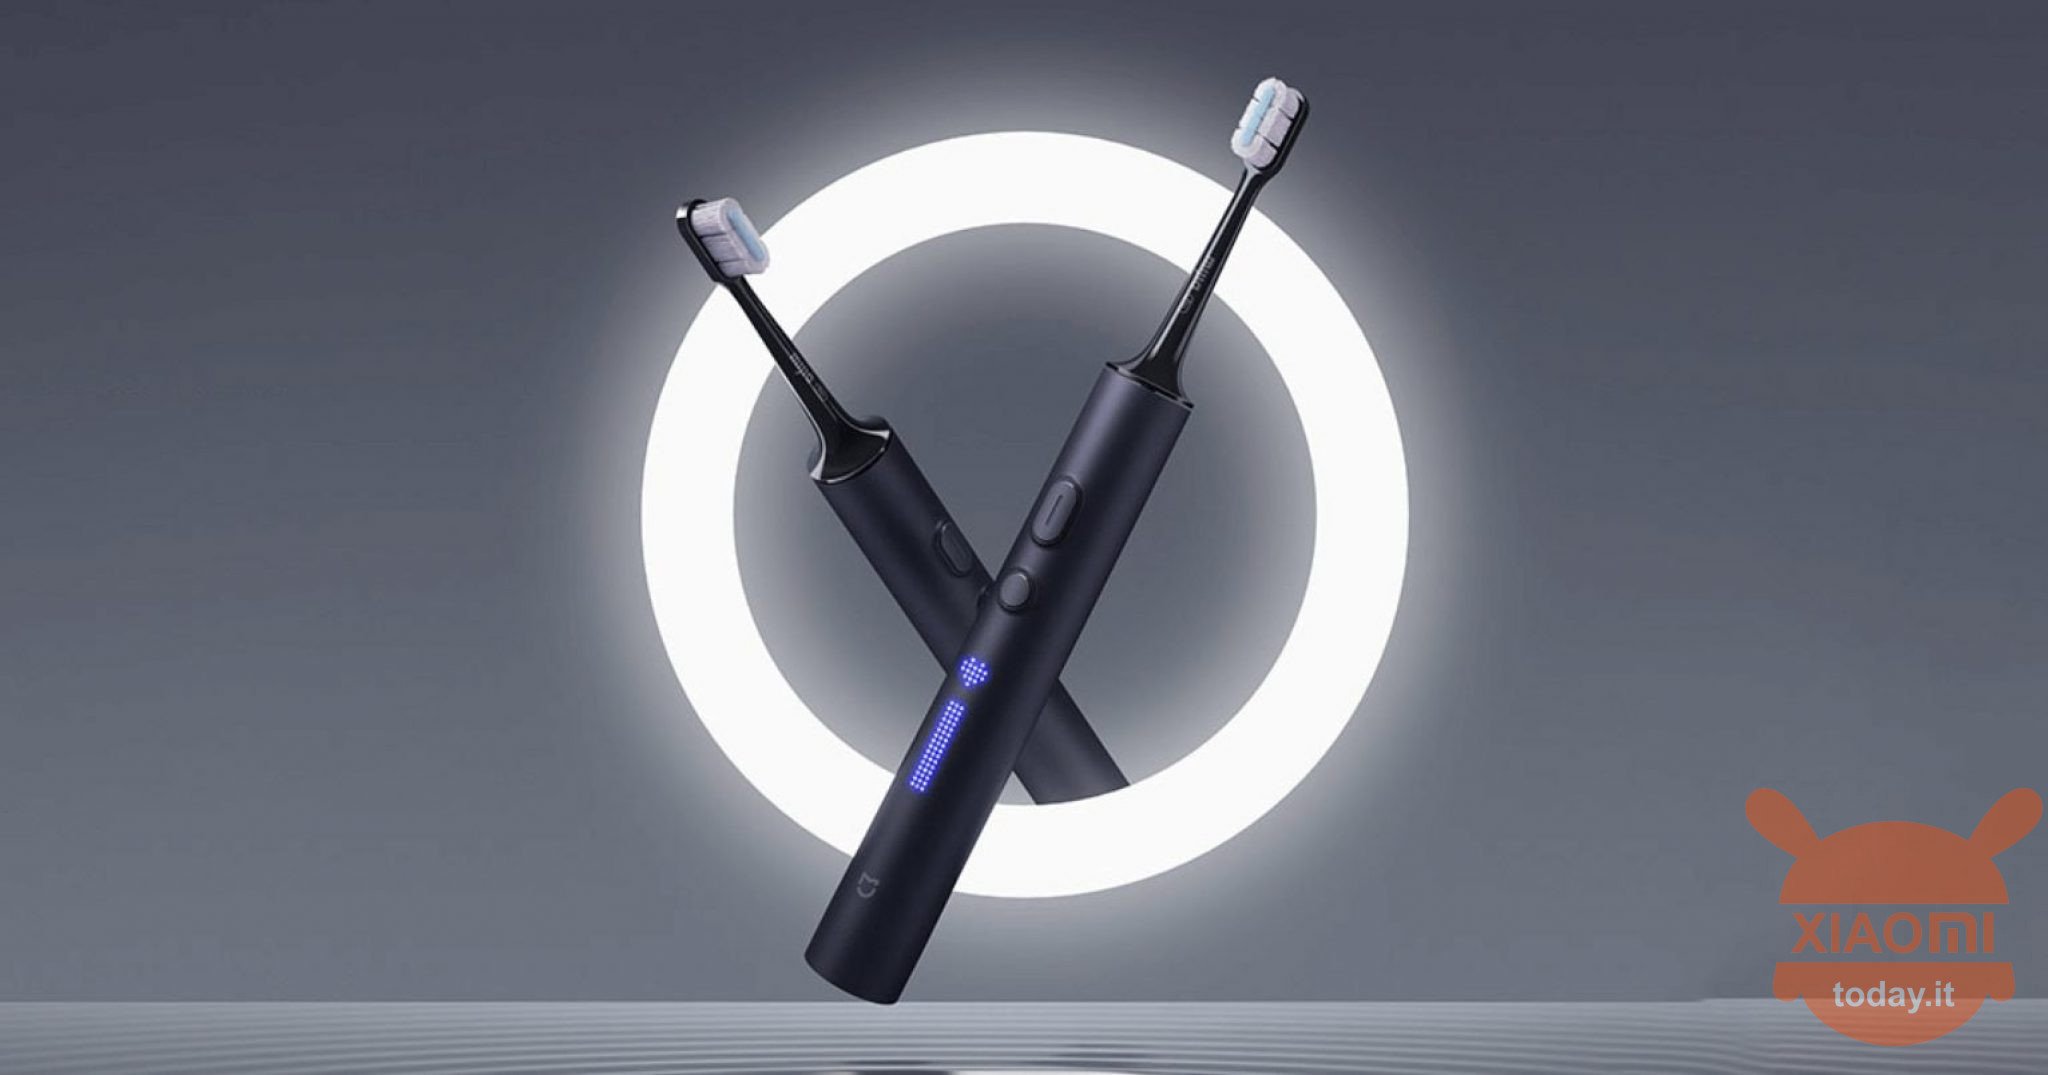 xiaomi elektrische tandenborstel t700 officieel: xiaomi's krachtigste elektrische tandenborstel